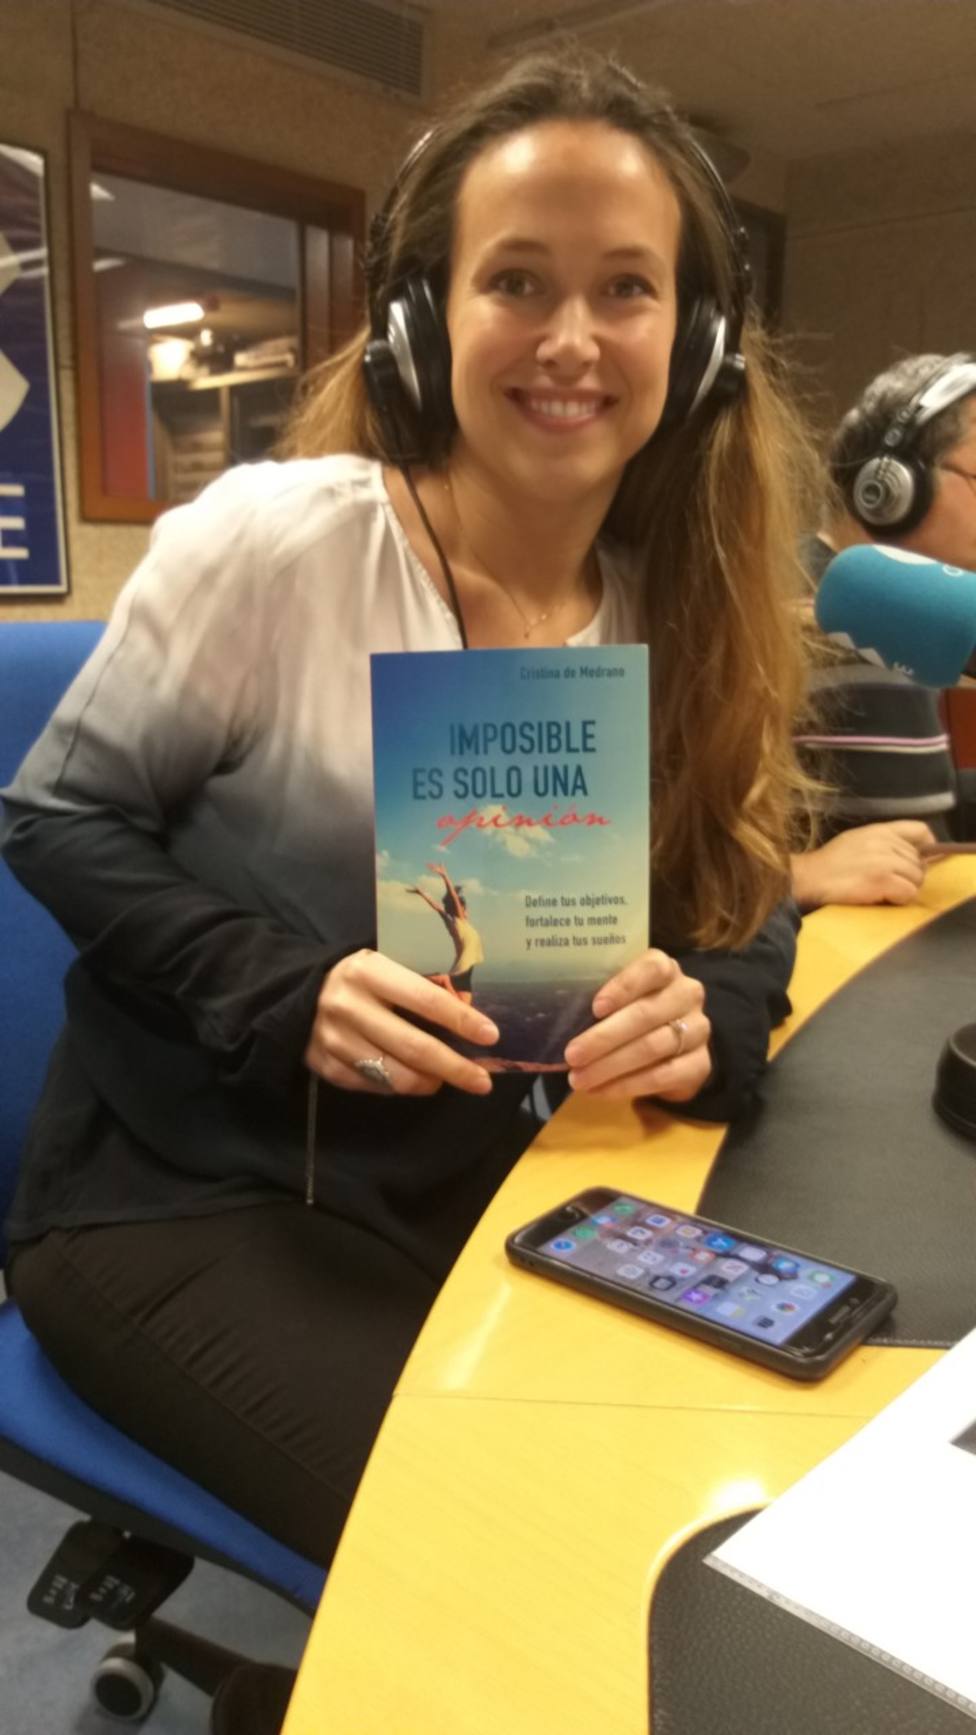 Imposible es solo una opción, un gran llibre de Cristina de Medrano